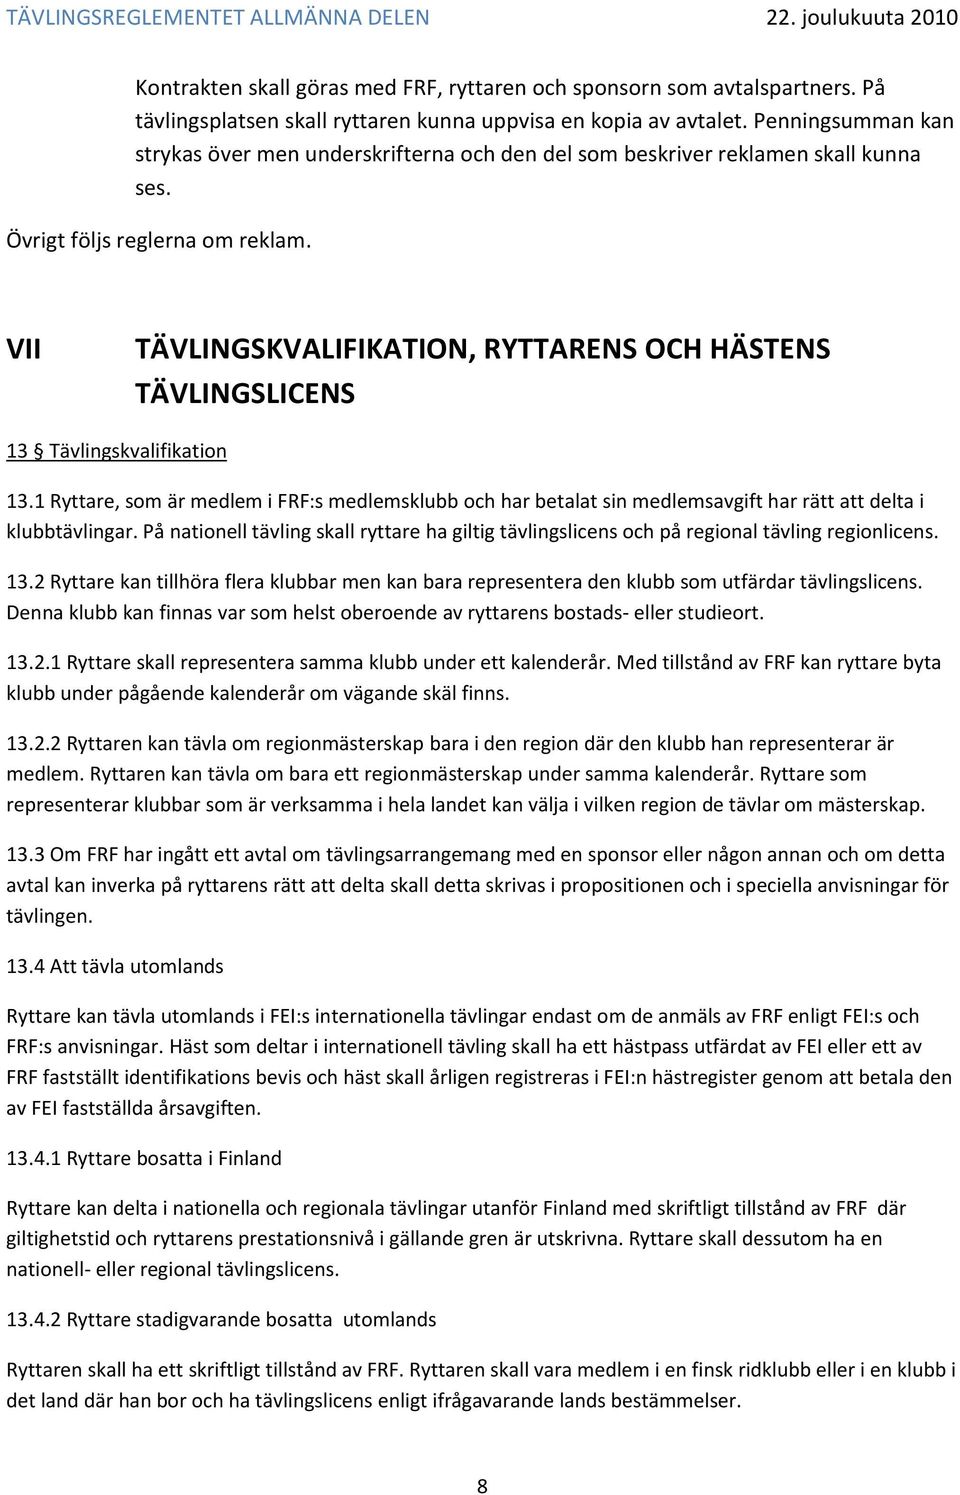 VII TÄVLINGSKVALIFIKATION, RYTTARENS OCH HÄSTENS TÄVLINGSLICENS 13 Tävlingskvalifikation 13.